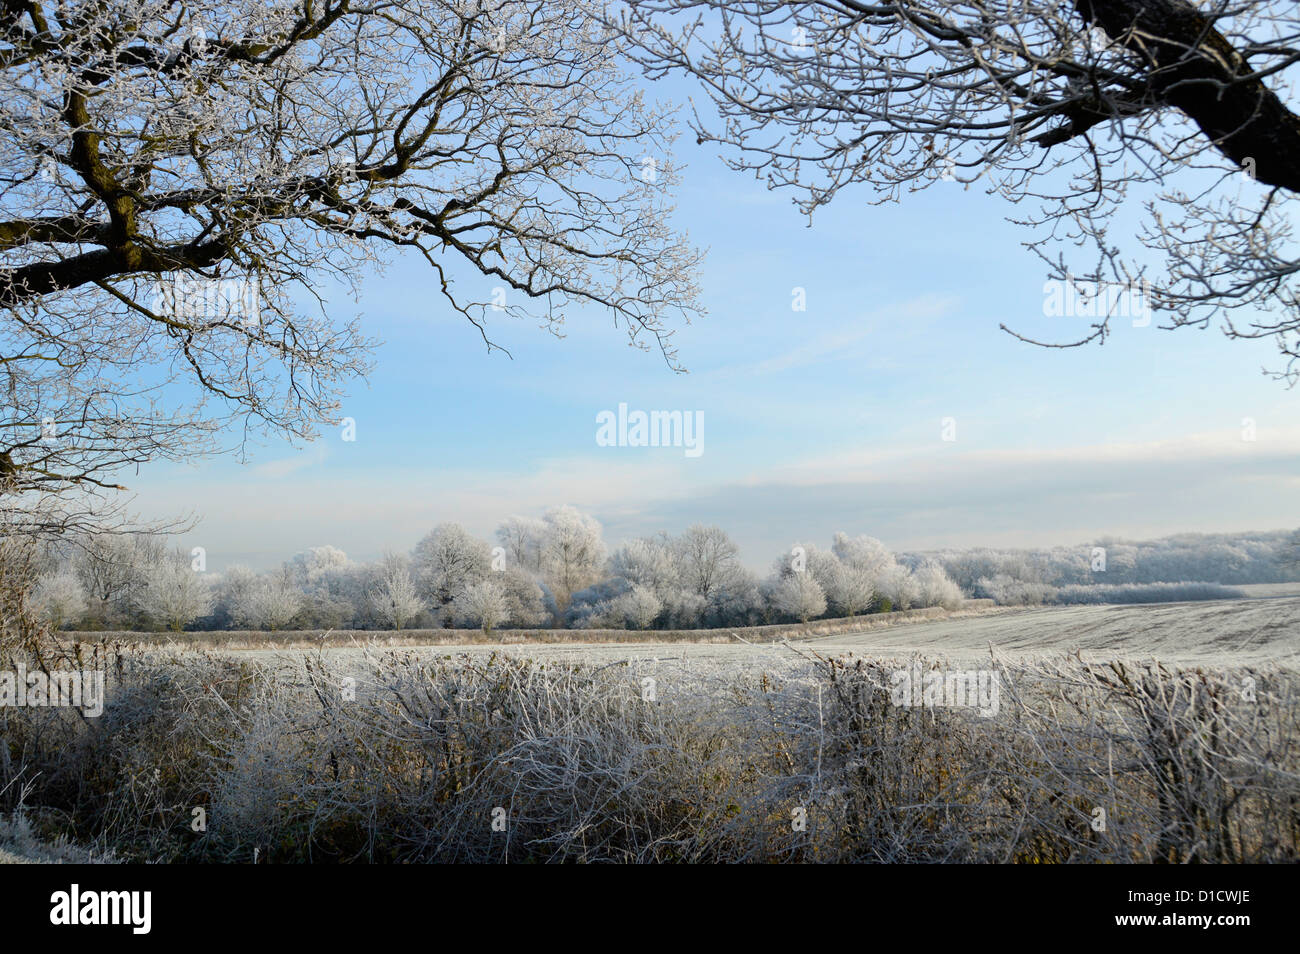 L'hiver est magnifique dans la campagne arbres boisés dans le champ de terre agricole Paysage avec givre tôt le matin sur les haies rurales Essex Angleterre Royaume-Uni Banque D'Images